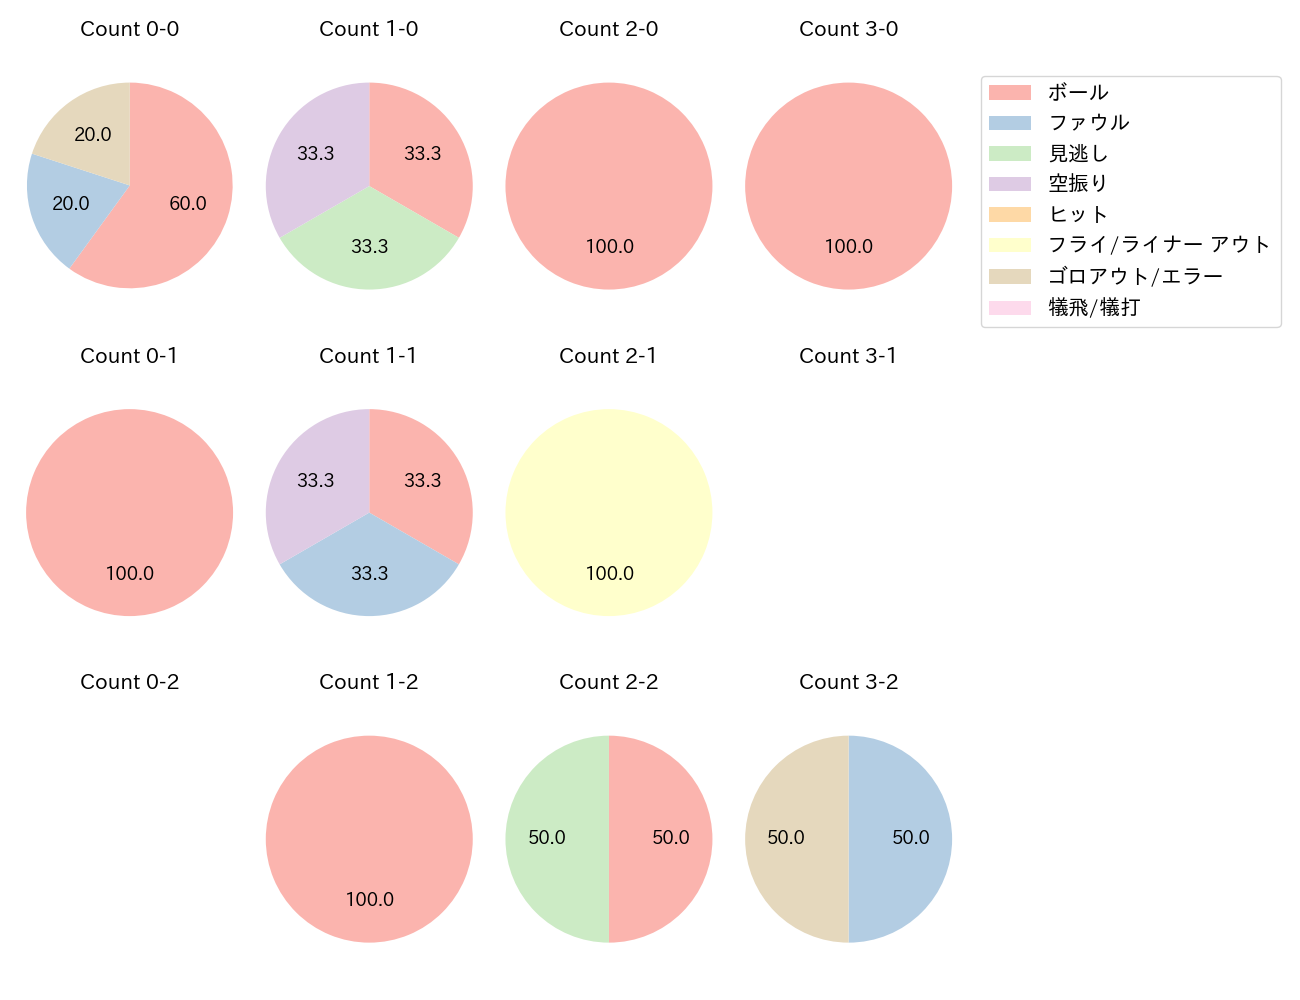 伊藤 将司の球数分布(2021年5月)